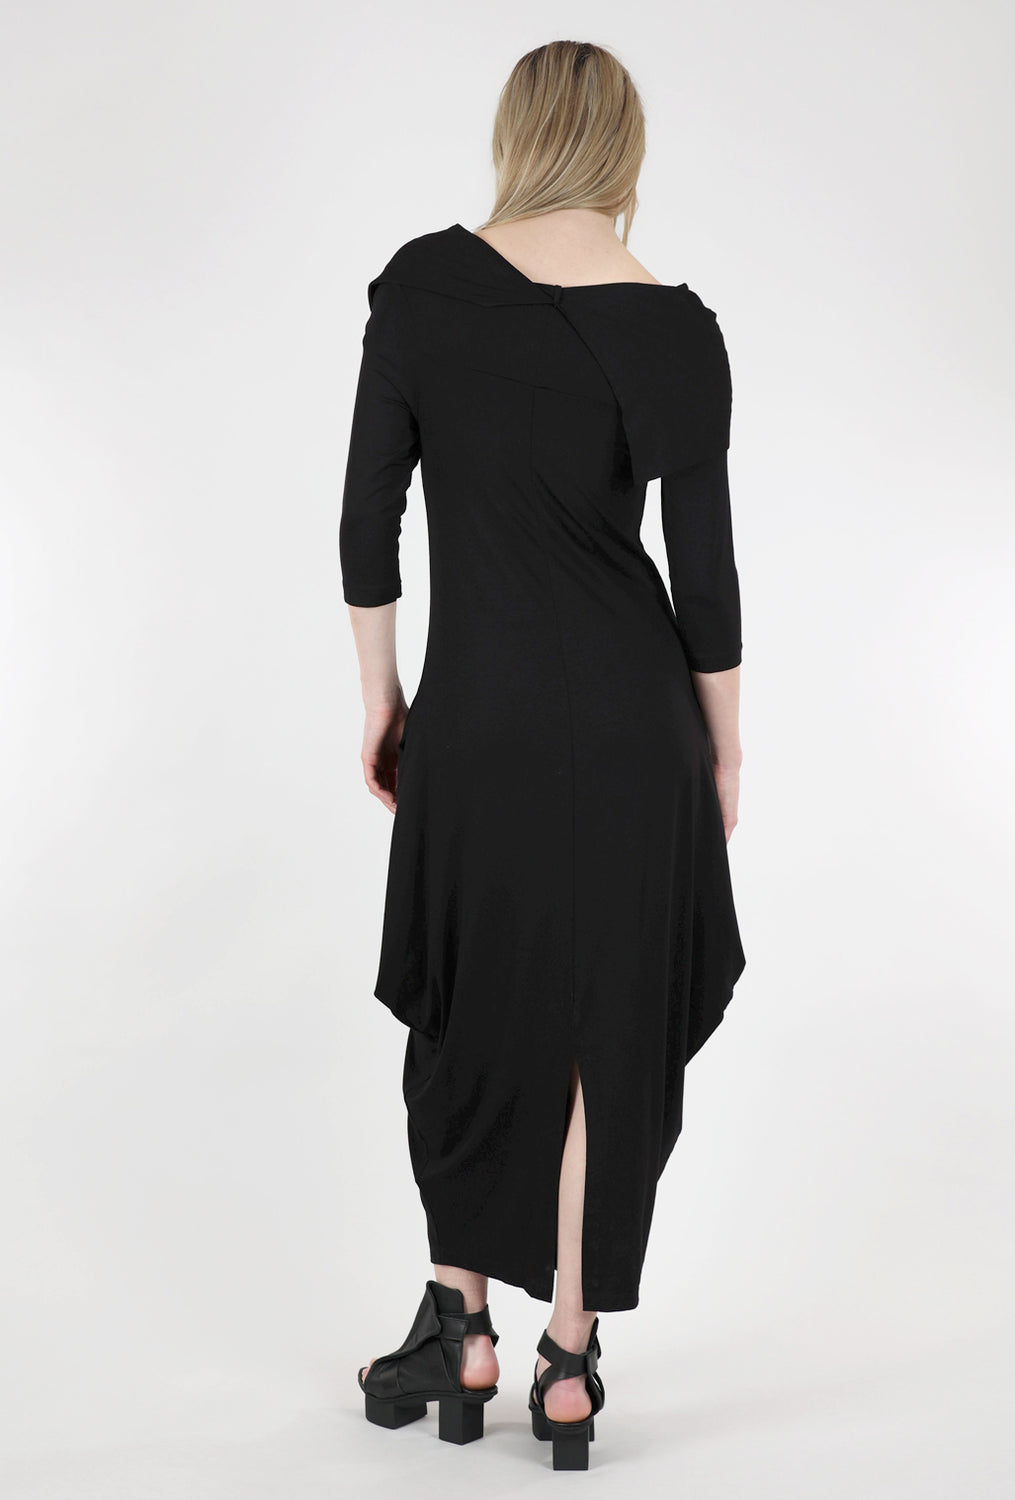 Kozan Jura Dress, Black 